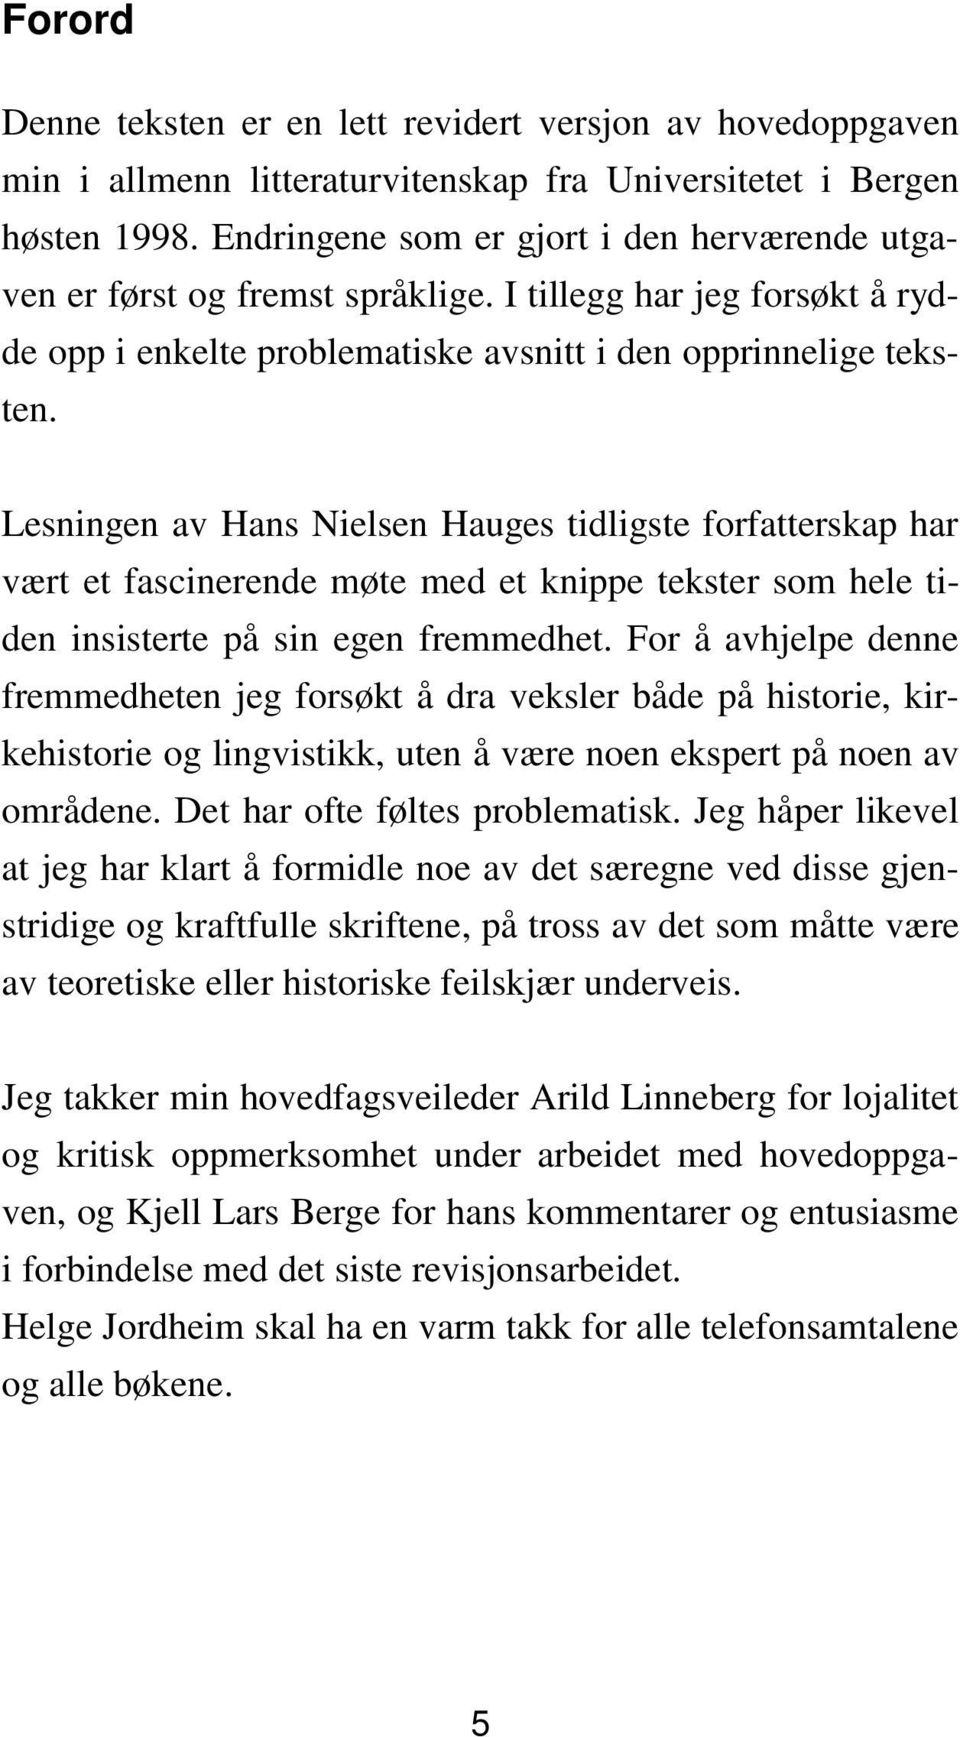 Lesningen av Hans Nielsen Hauges tidligste forfatterskap har vært et fascinerende møte med et knippe tekster som hele tiden insisterte på sin egen fremmedhet.